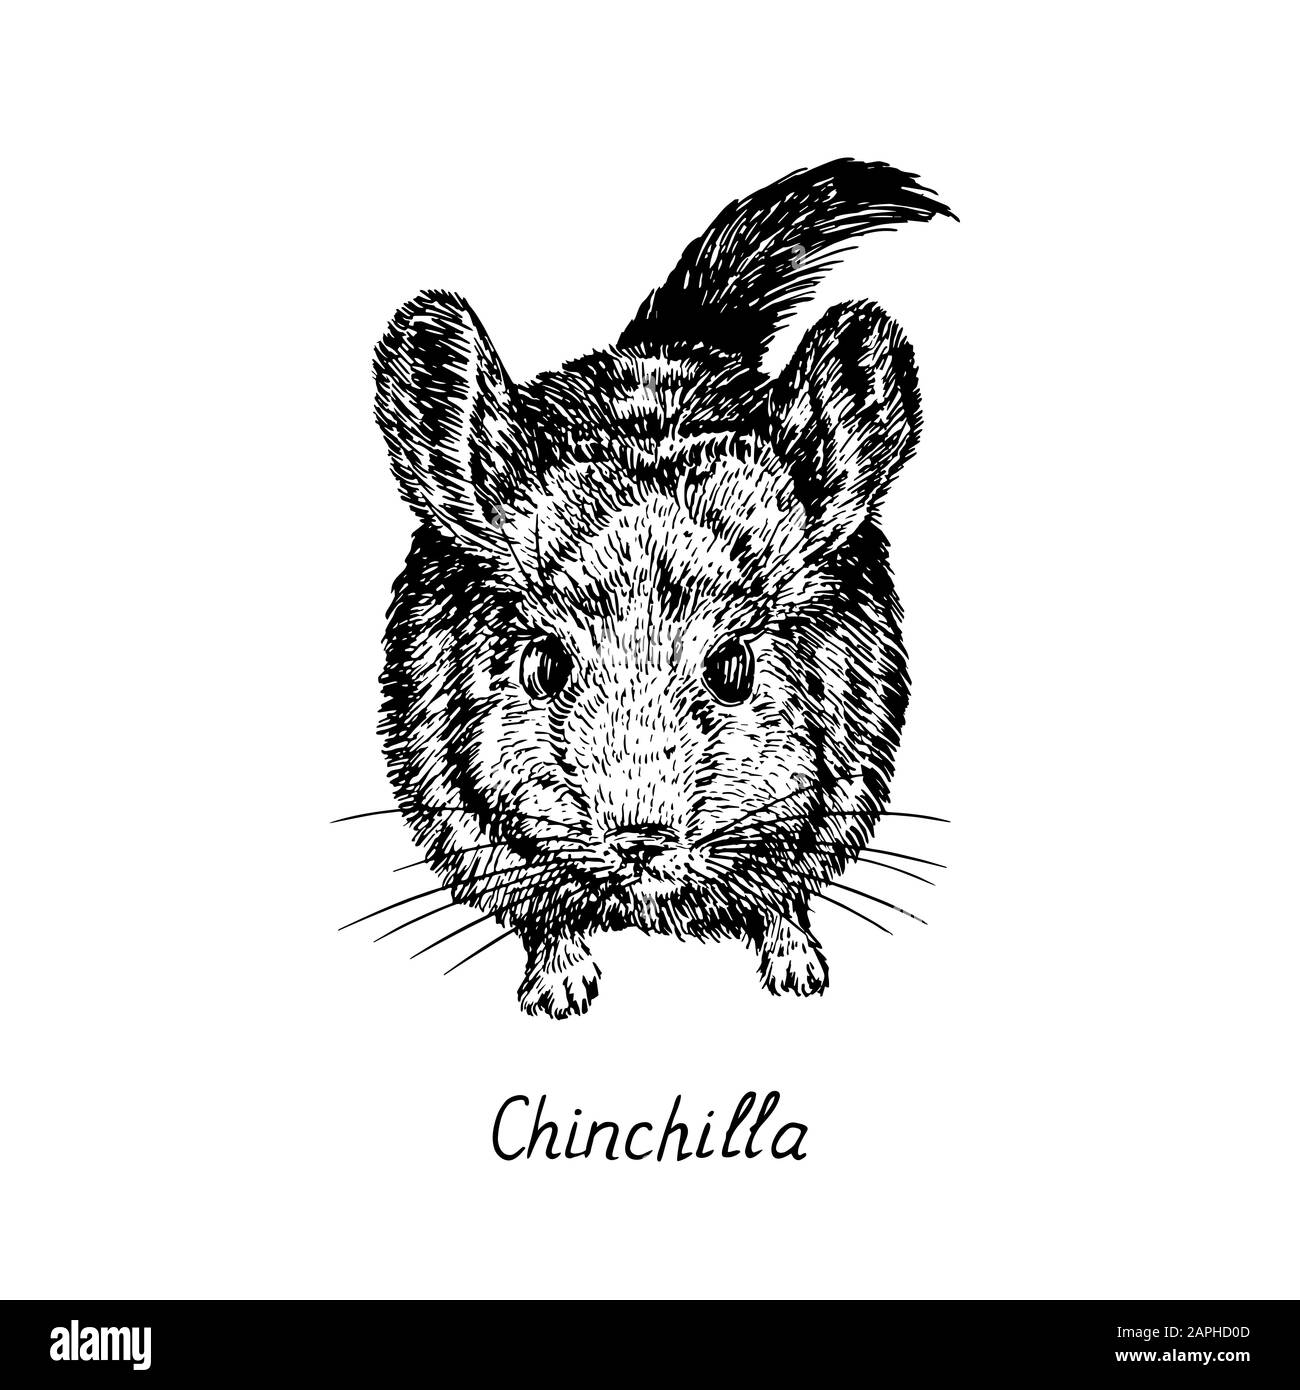 Chinchilla, Draufsicht, handgezeichneter Tiefdruckstil, Skizzendarstellung, Element für Design Stockfoto